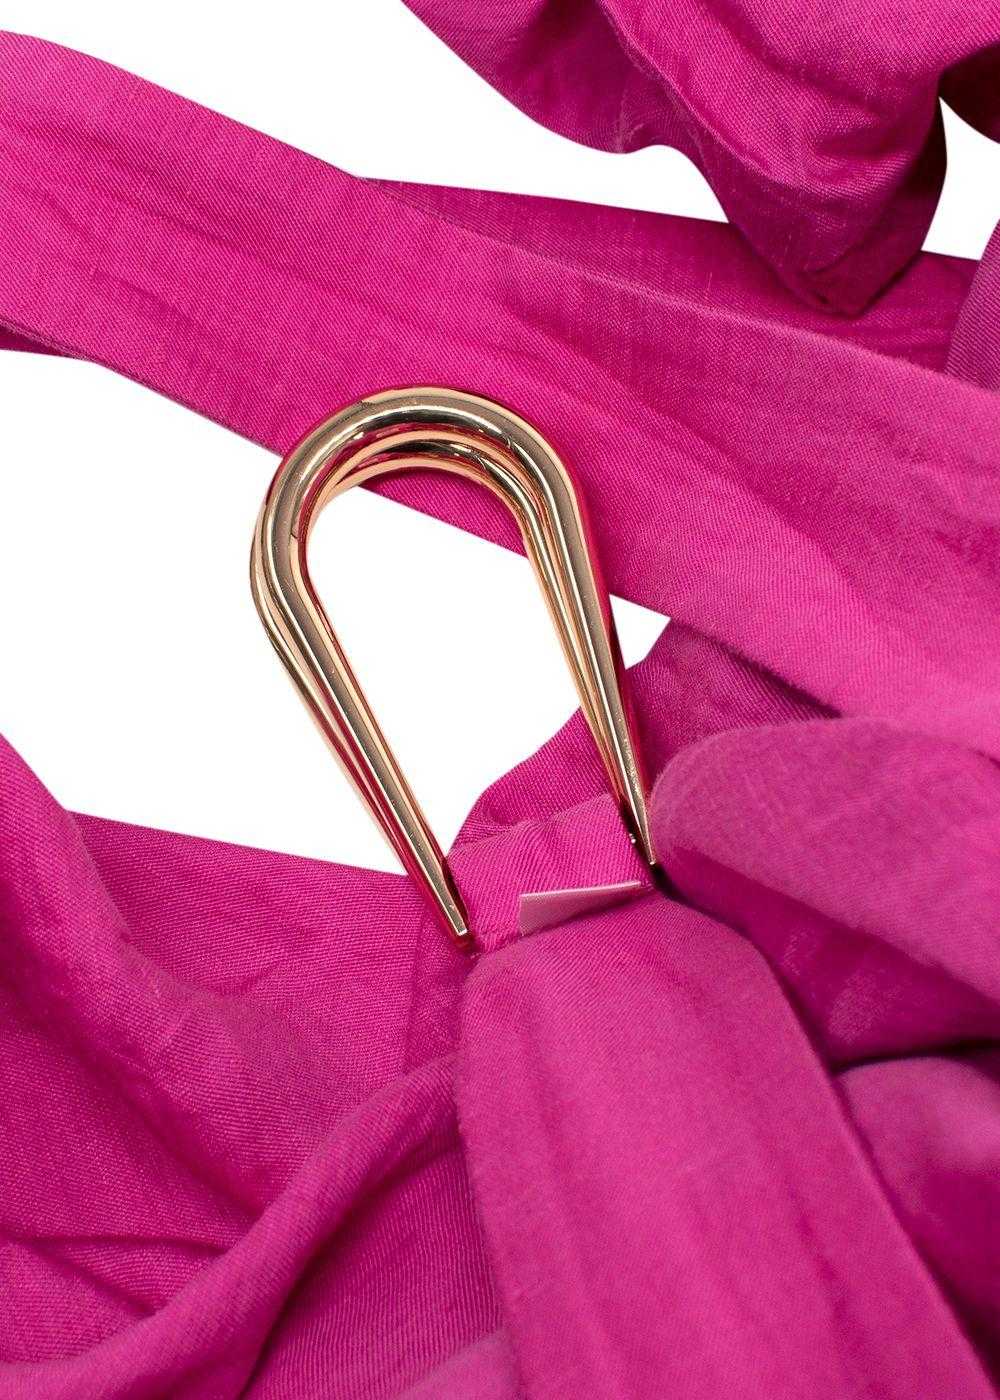 Acler Acler Linen-Blend Cranhurst Midi Dress - image 6